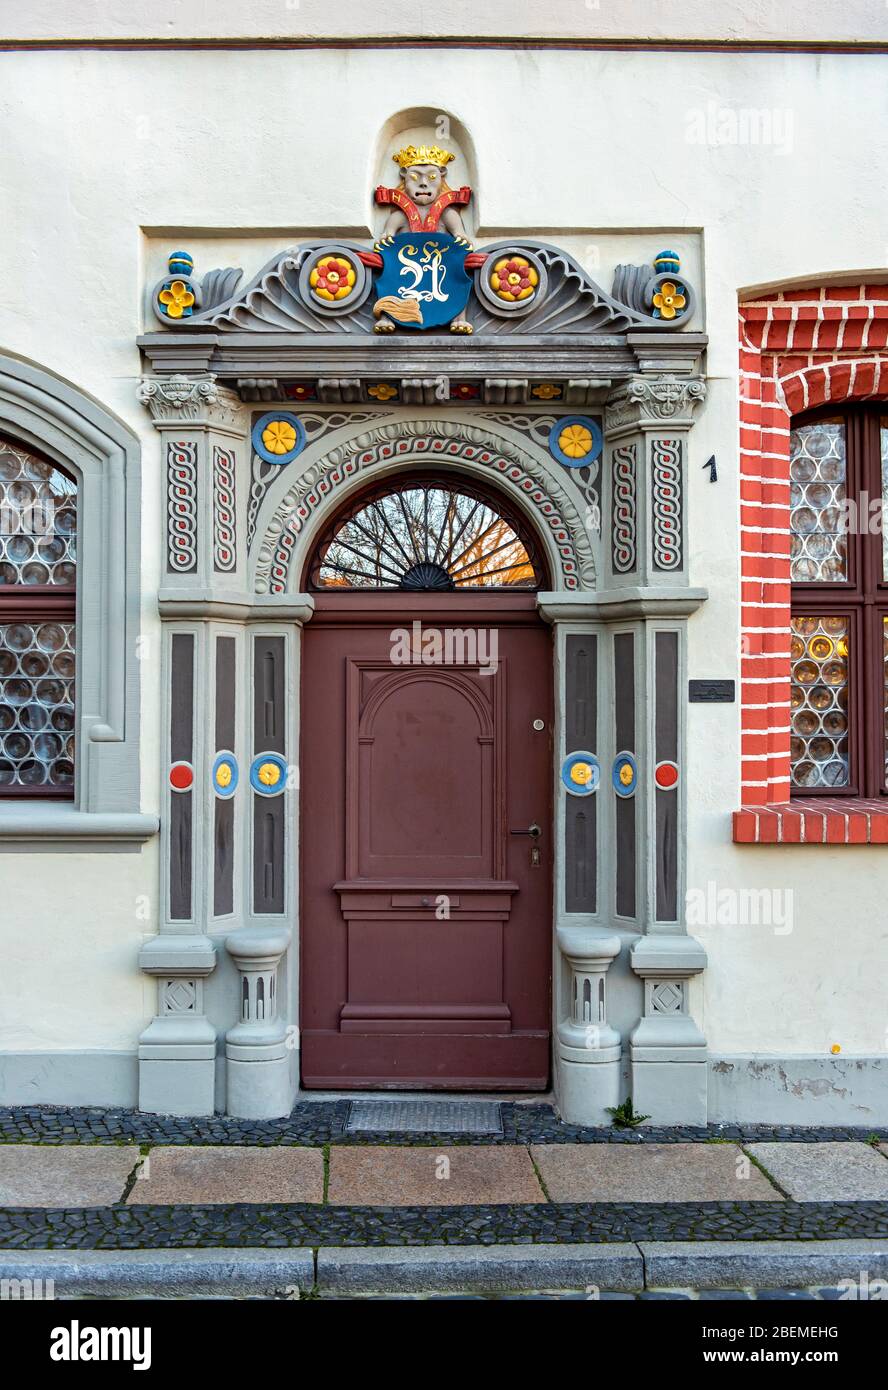 Portail Renaissance à Langenstraße 1, Görlitz, Allemagne Banque D'Images